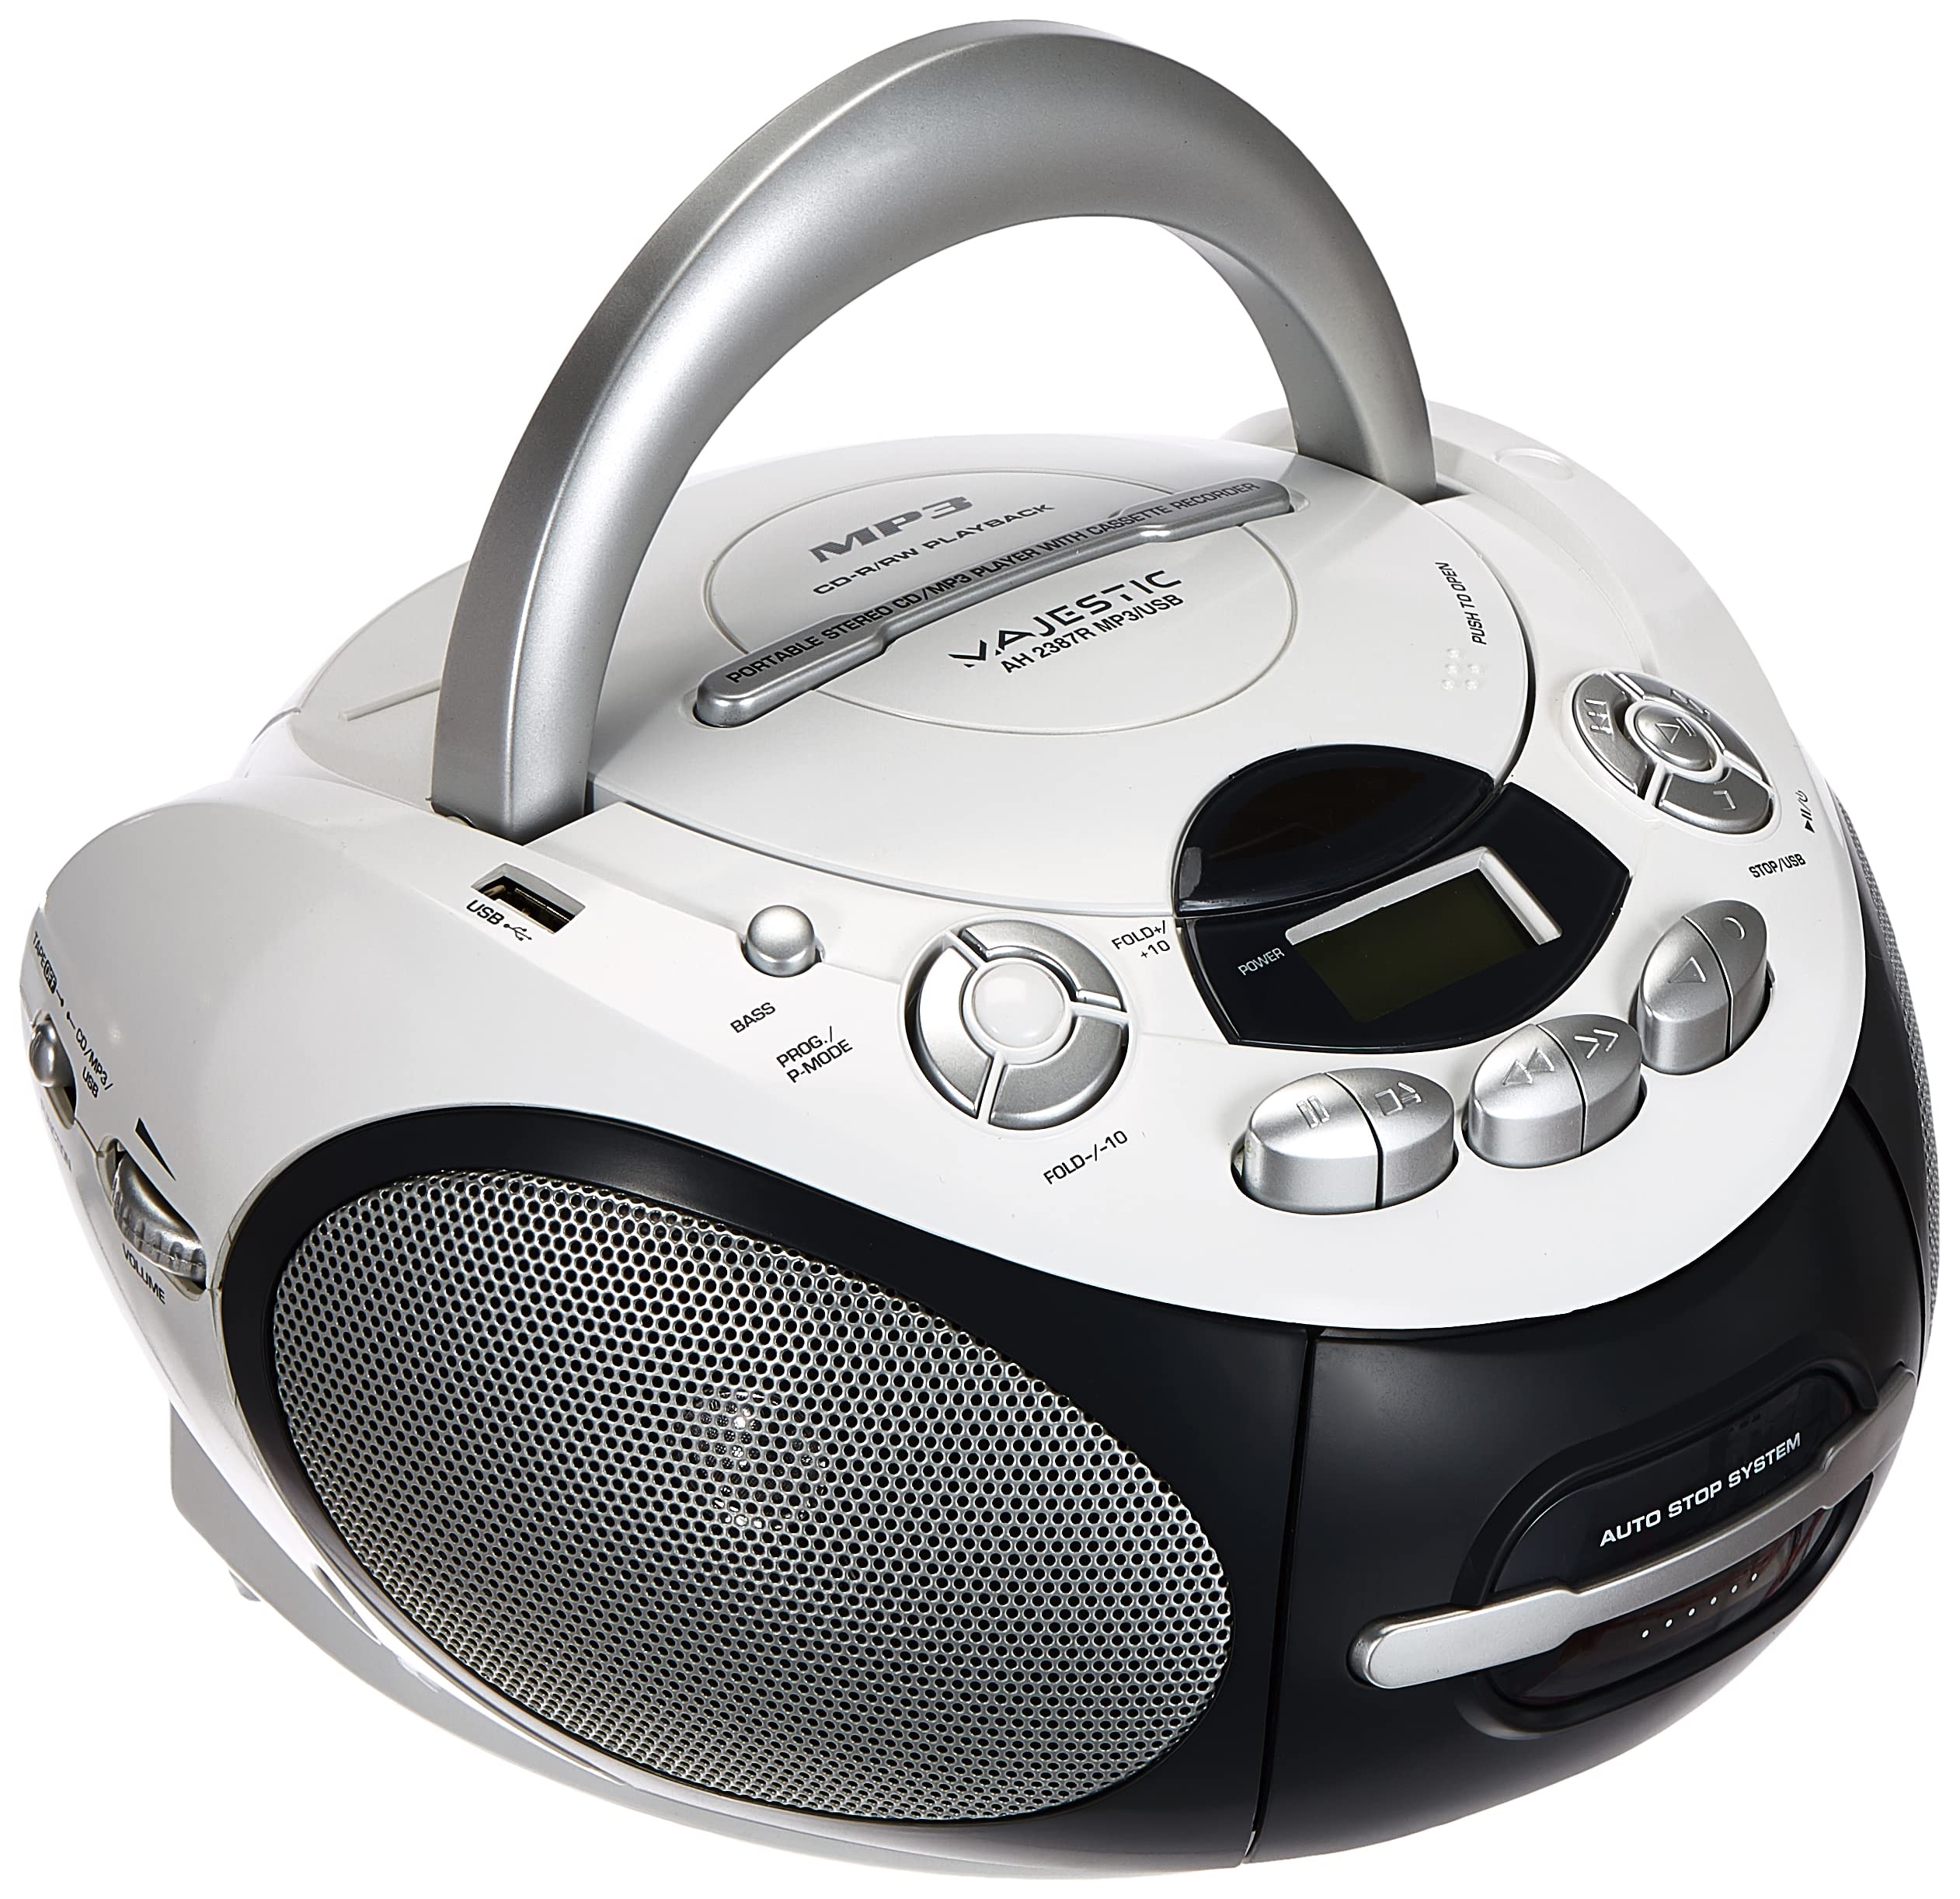 Majestic AH 2387R MP3 USB - Tragbare Boombox mit CD/MP3-Player, USB-Eingang, Kassettenrekorder, Kopfhöreranschluss, Weiß